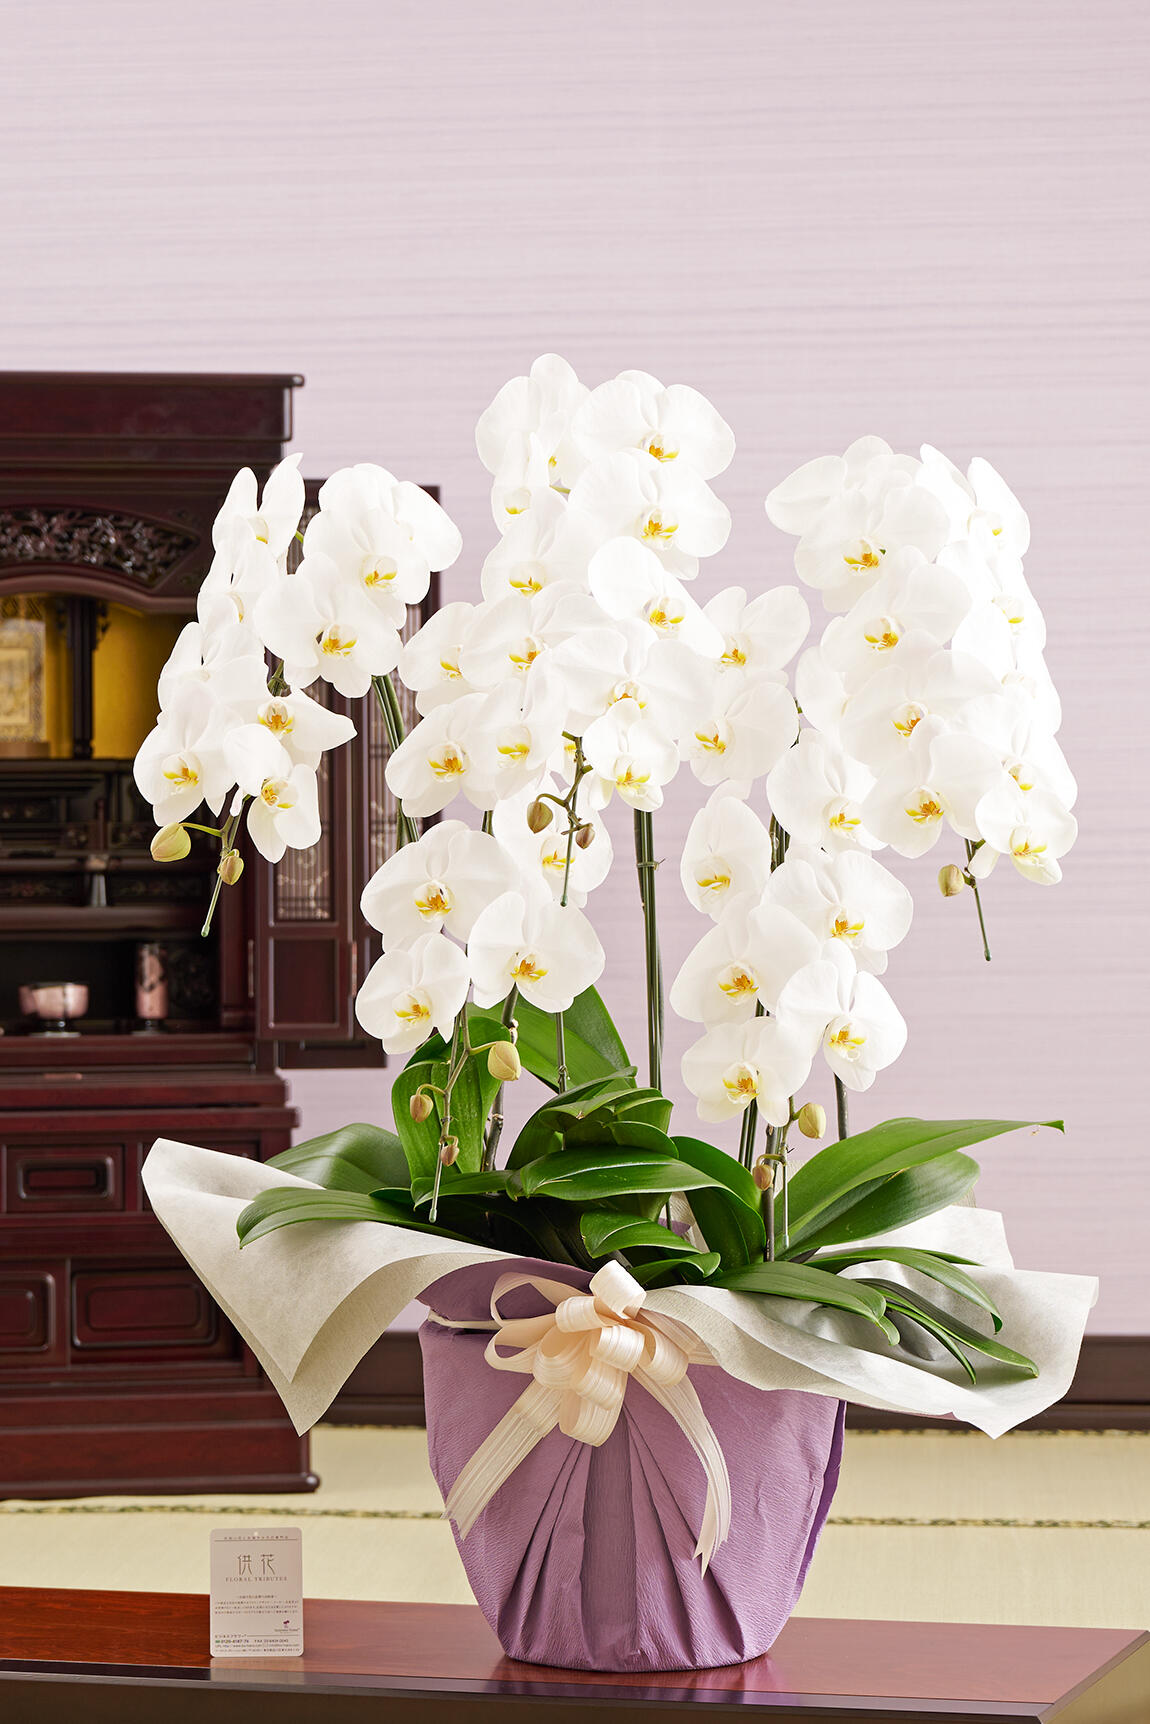 フューネラル胡蝶蘭5本立 白 3万円コース 50 55輪程度 祝い花と供花の販売 ネットの花屋 ビジネスフラワー